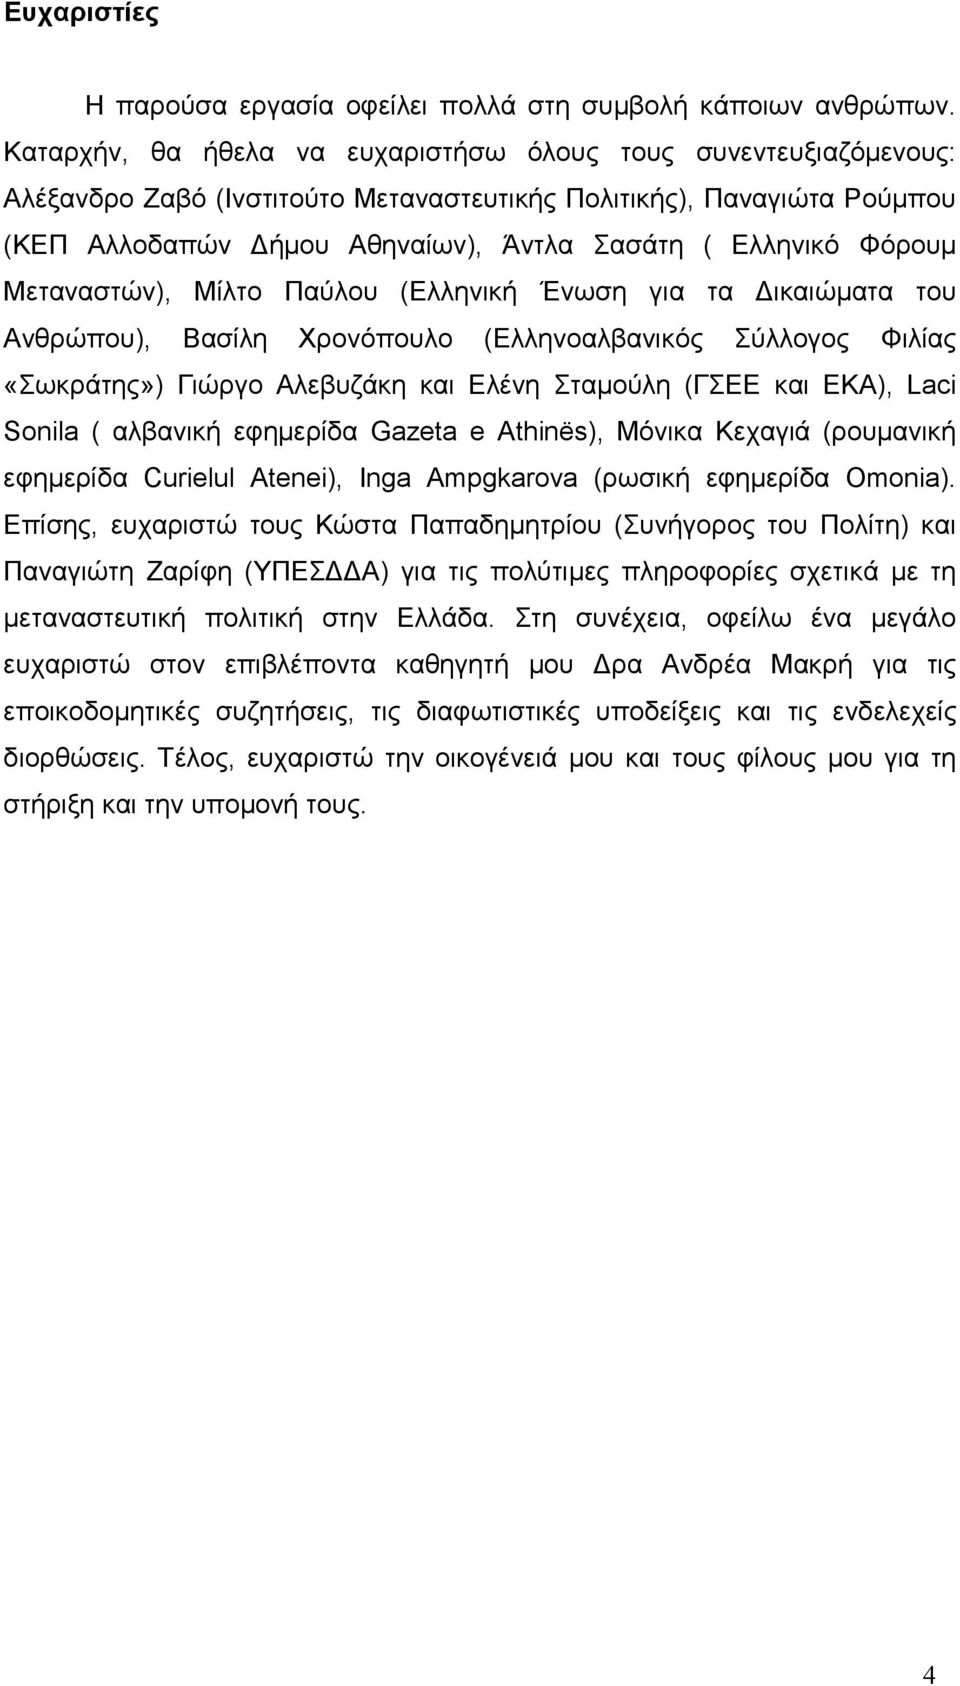 Φόρουµ Μεταναστών), Μίλτο Παύλου (Ελληνική Ένωση για τα ικαιώµατα του Ανθρώπου), Βασίλη Χρονόπουλο (Ελληνοαλβανικός Σύλλογος Φιλίας «Σωκράτης») Γιώργο Αλεβυζάκη και Ελένη Σταµούλη (ΓΣΕΕ και ΕΚΑ),